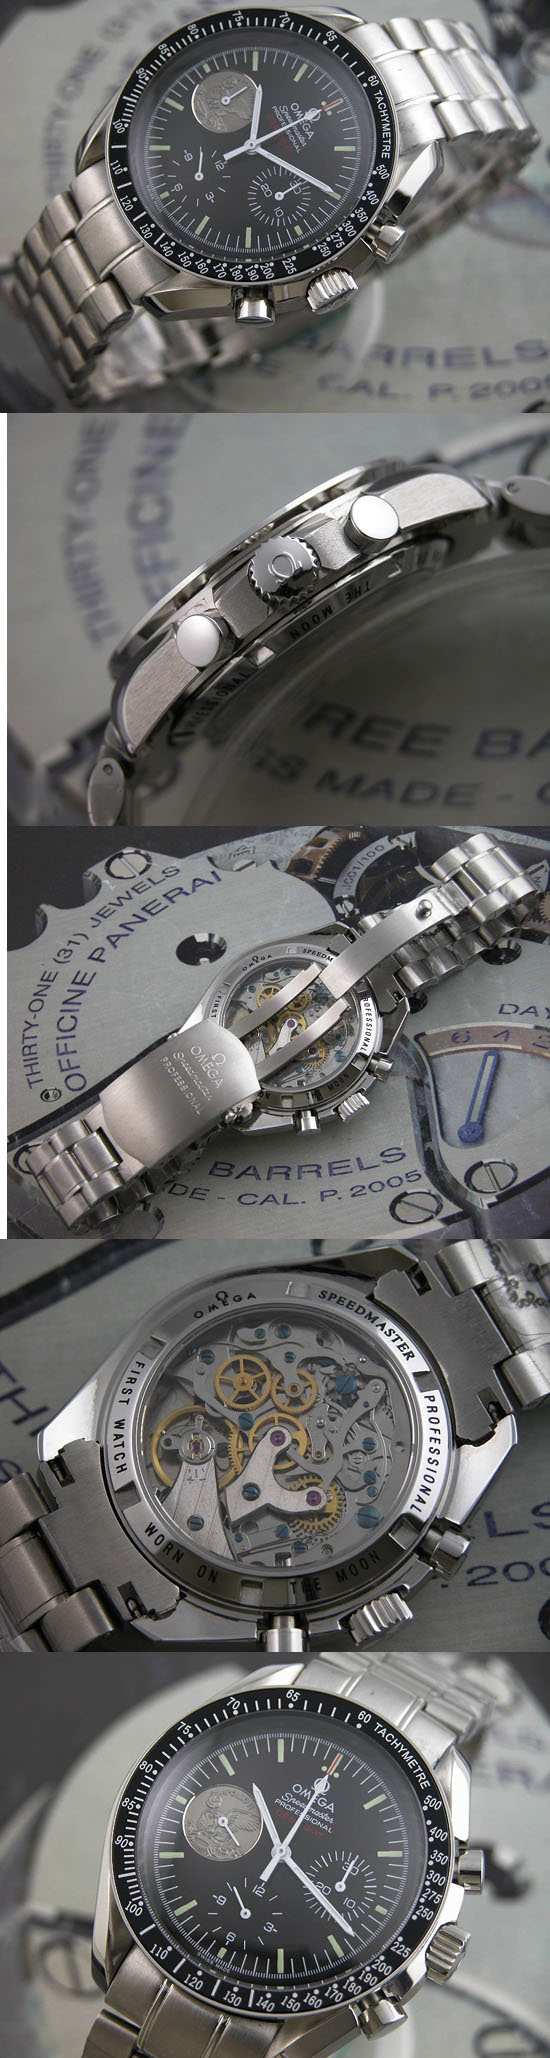 おしゃれなブランド時計がオメガ-スピードマスター-OMEGA-311-30-42-30-01-002-ai-男性用 を提供します.